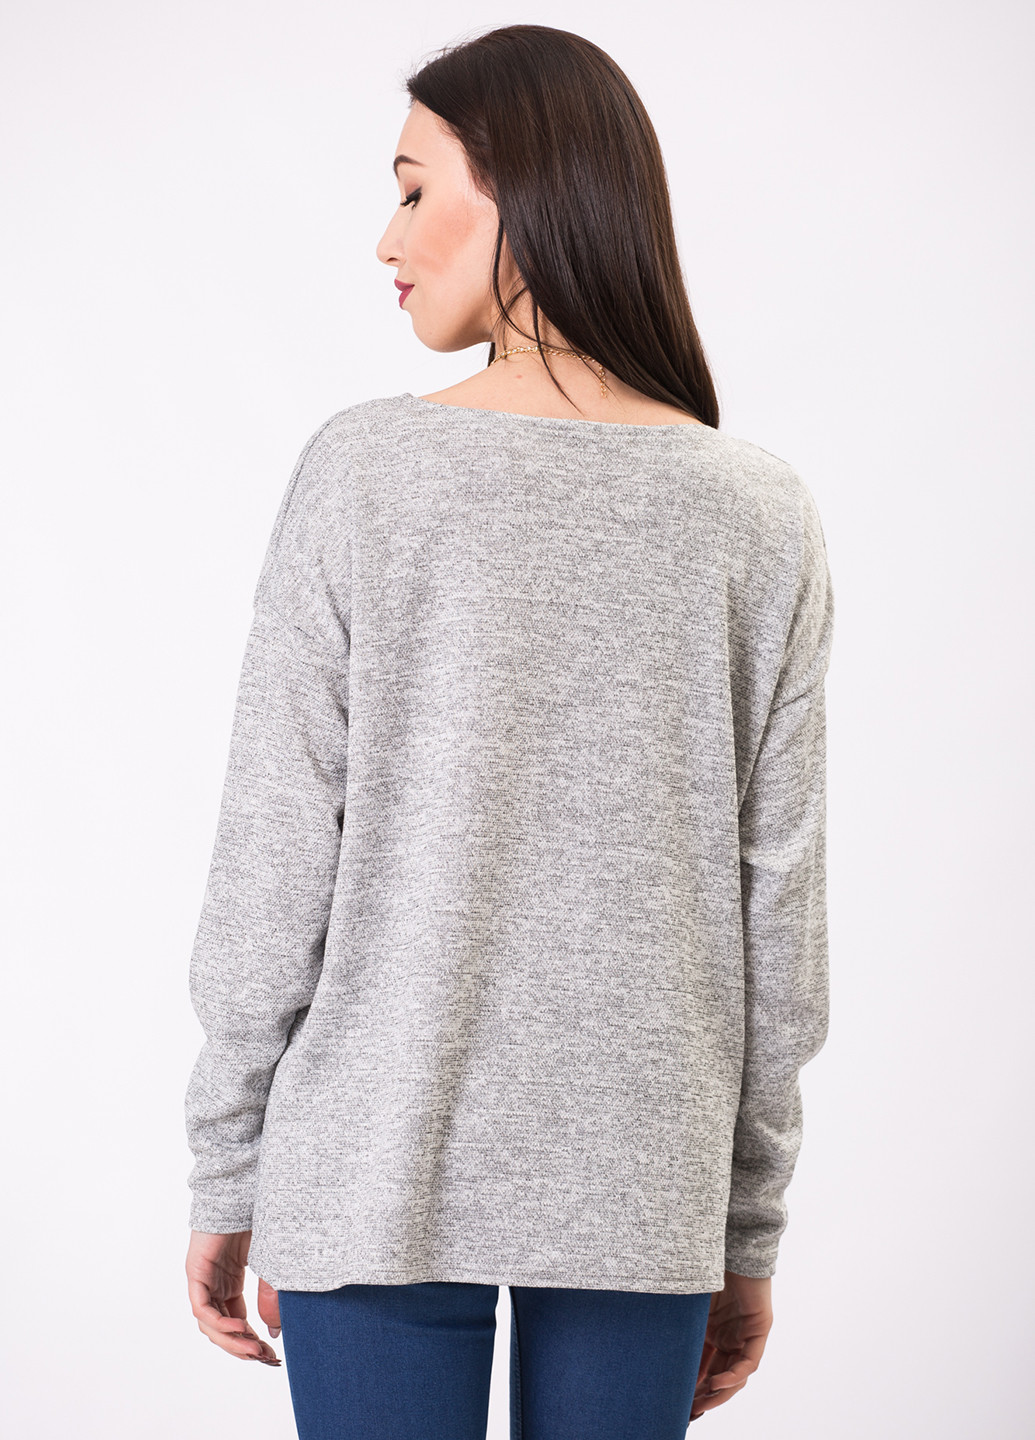 Світло-сірий демісезонний пуловер пуловер Garne